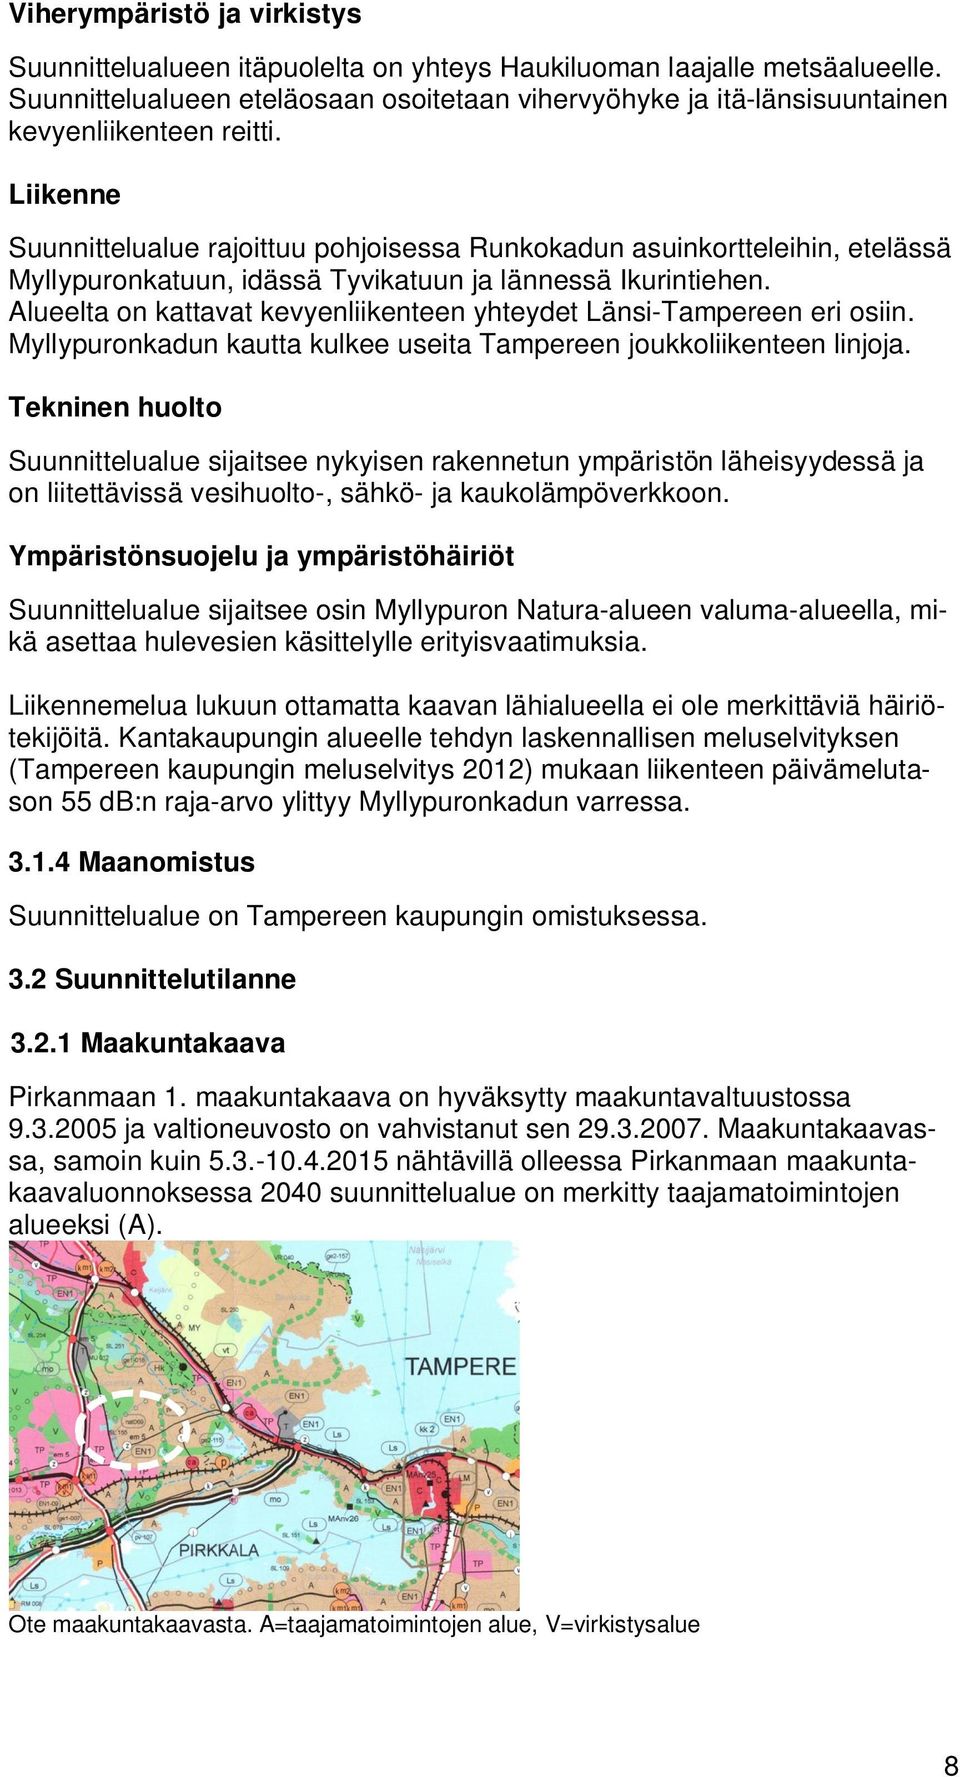 Liikenne Suunnittelualue rajoittuu pohjoisessa Runkokadun asuinkortteleihin, etelässä Myllypuronkatuun, idässä Tyvikatuun ja lännessä Ikurintiehen.